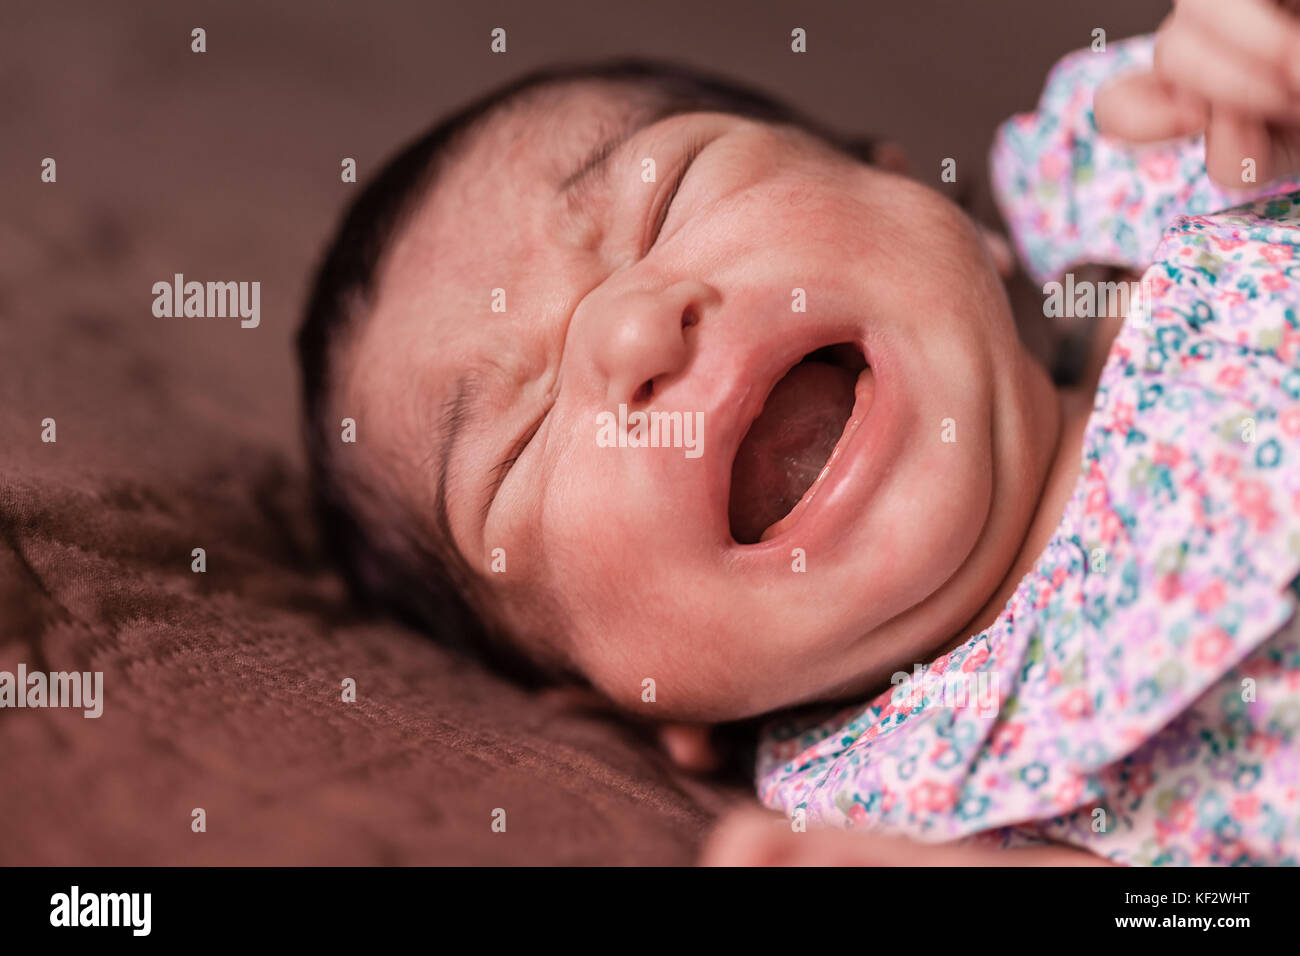 Portrait d'un malheureux mignon deux semaines Naissance bebe Fille couchée et pleurait à chaudes larmes, avec des crampes ou coliques, saignement, douleur d'estomac coliques Banque D'Images